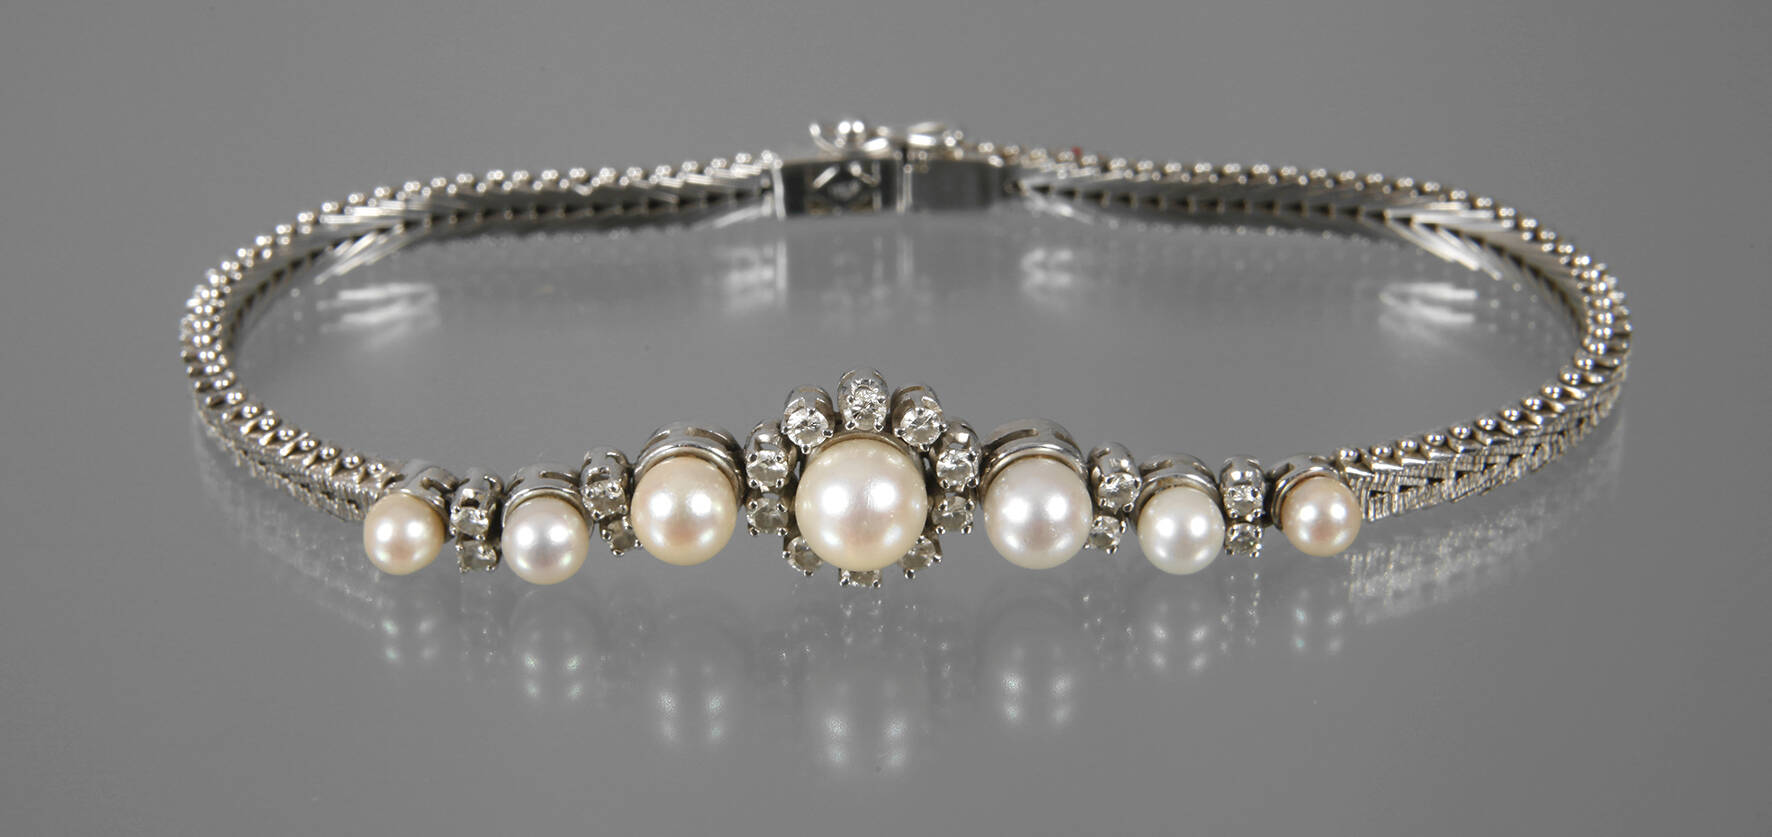 Armband mit Perlen und Brillanten